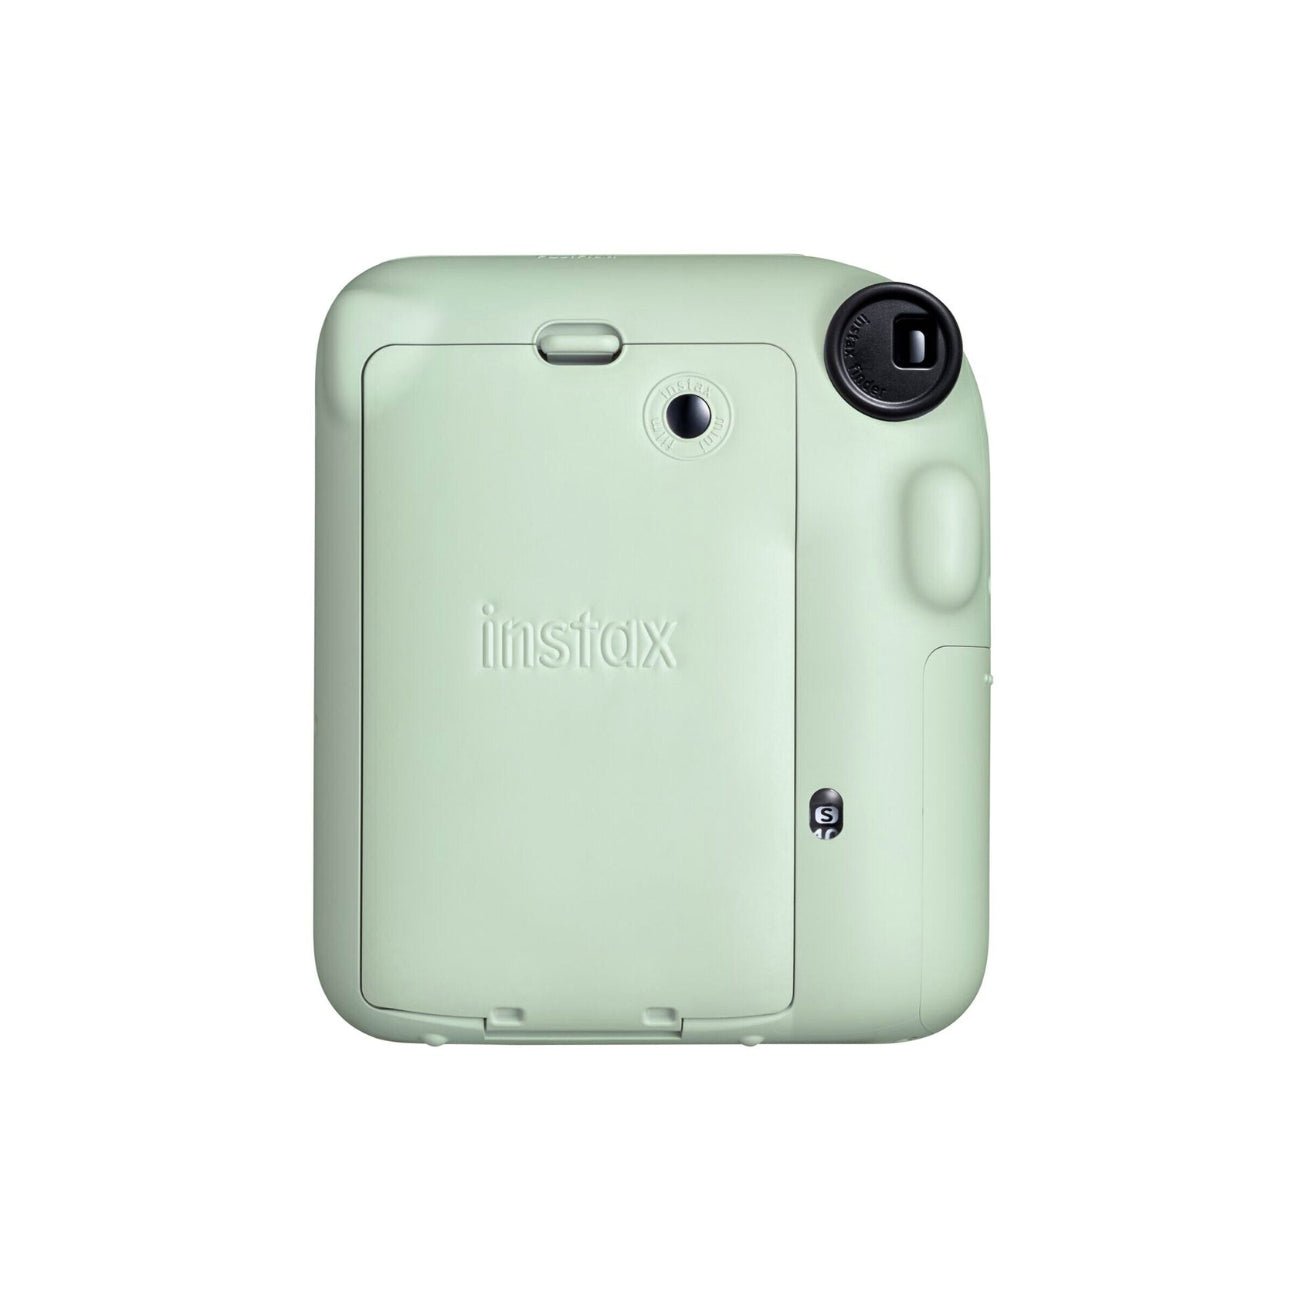 Fujifilm INSTAX Mini 12 Instant Film Camera (Green) - Rear view